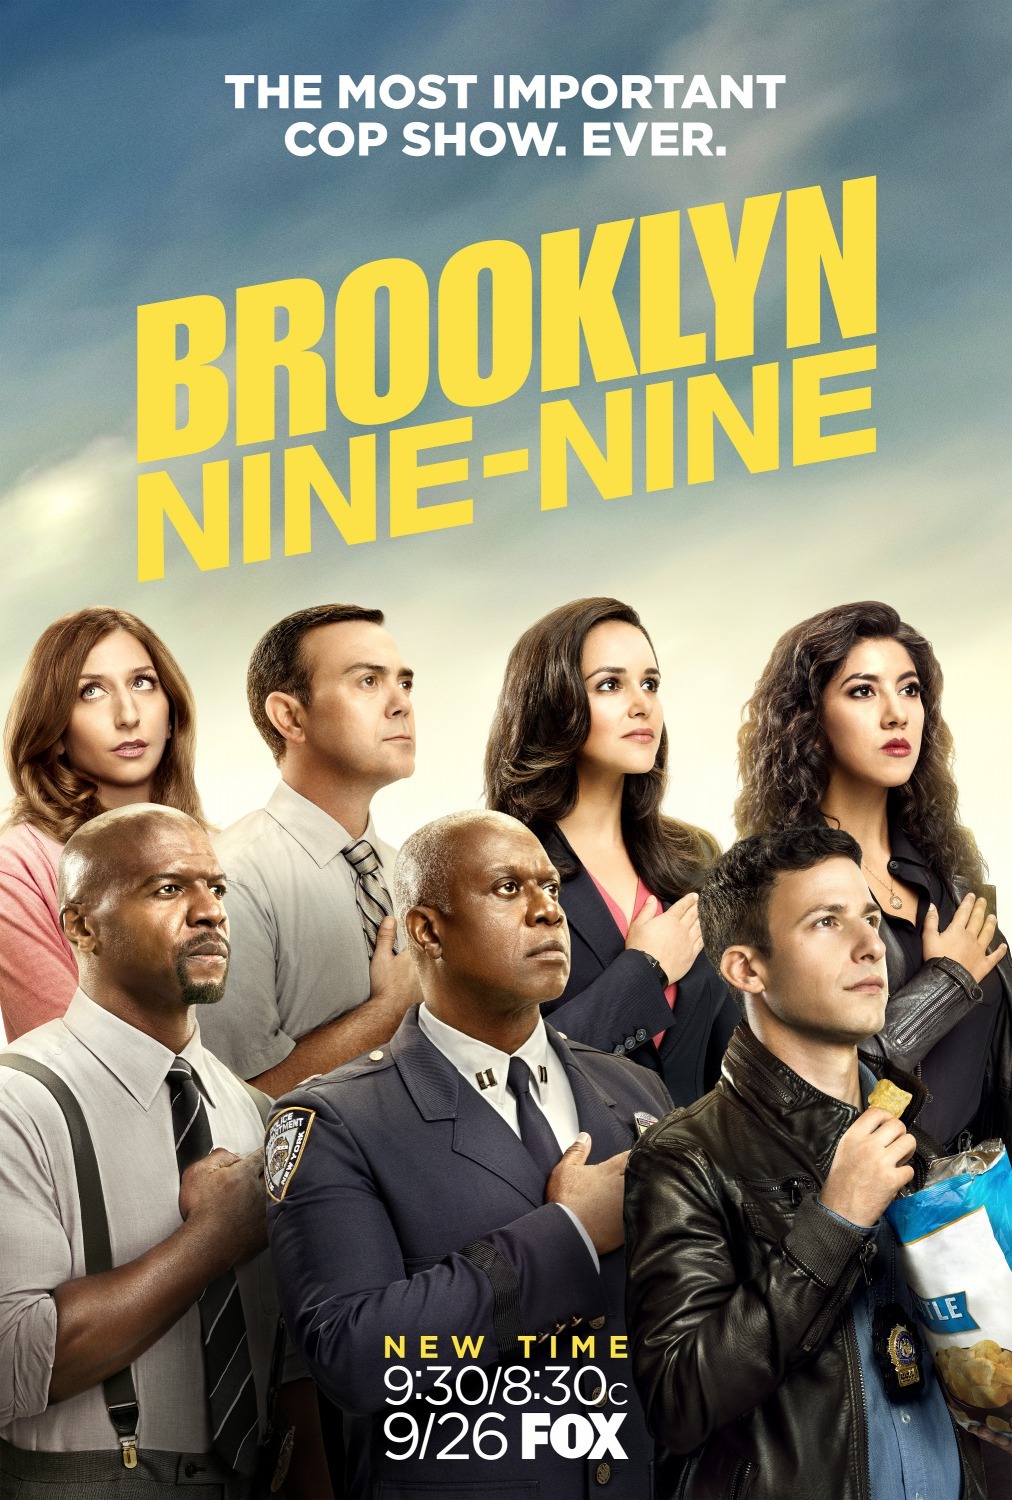 ดูหนังออนไลน์ฟรี Brooklyn Nine-Nine Season 4 EP.22 (END) บรู๊คลินเก้า ปี 4 ตอนที่ 22